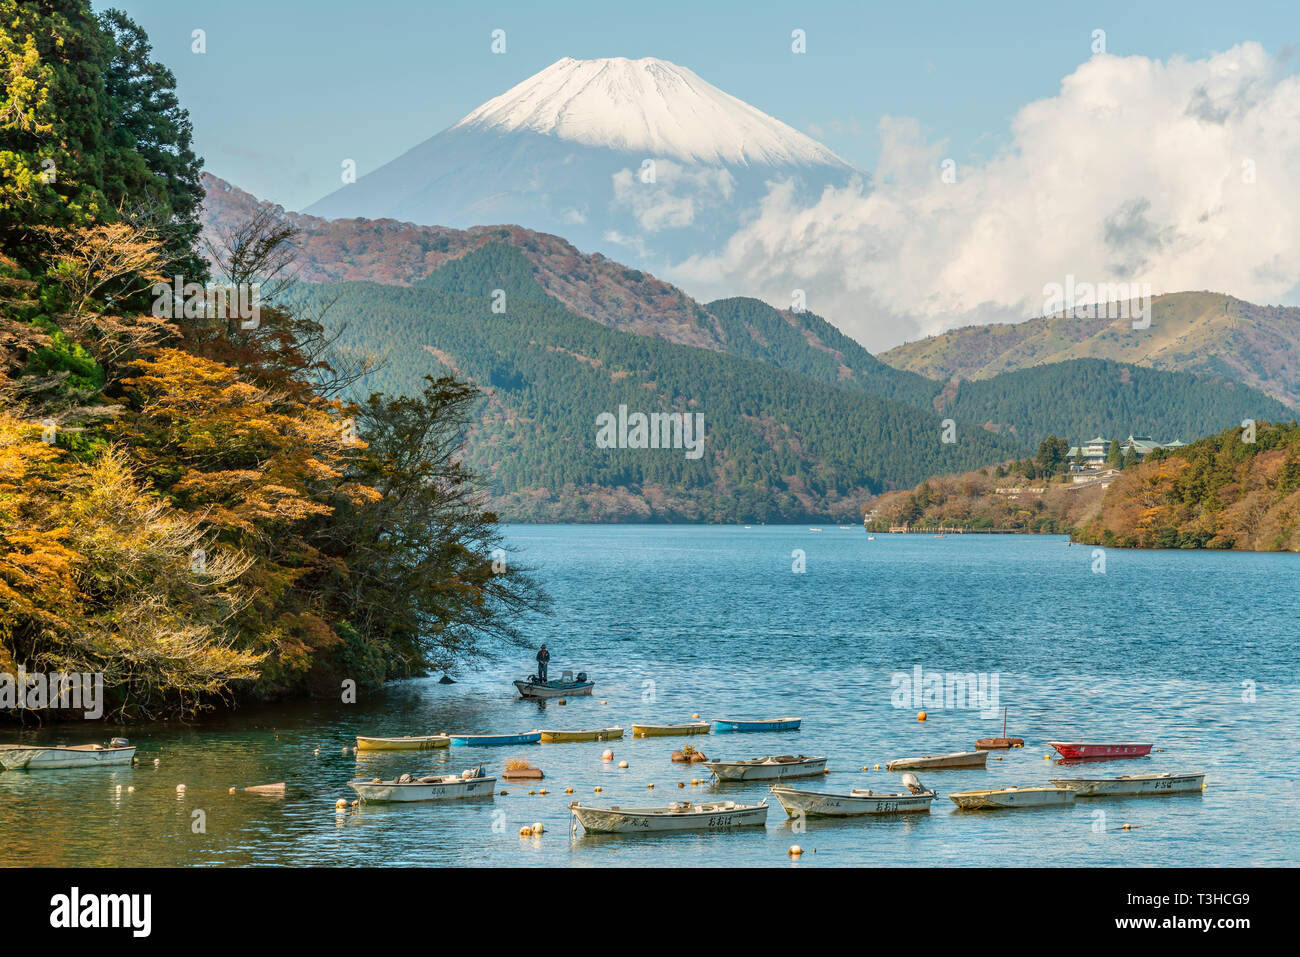 Fishing boats at Lake Ashi (Ashinoko) with Mt.Fuji at the background, Hakone, Japan Stock Photo